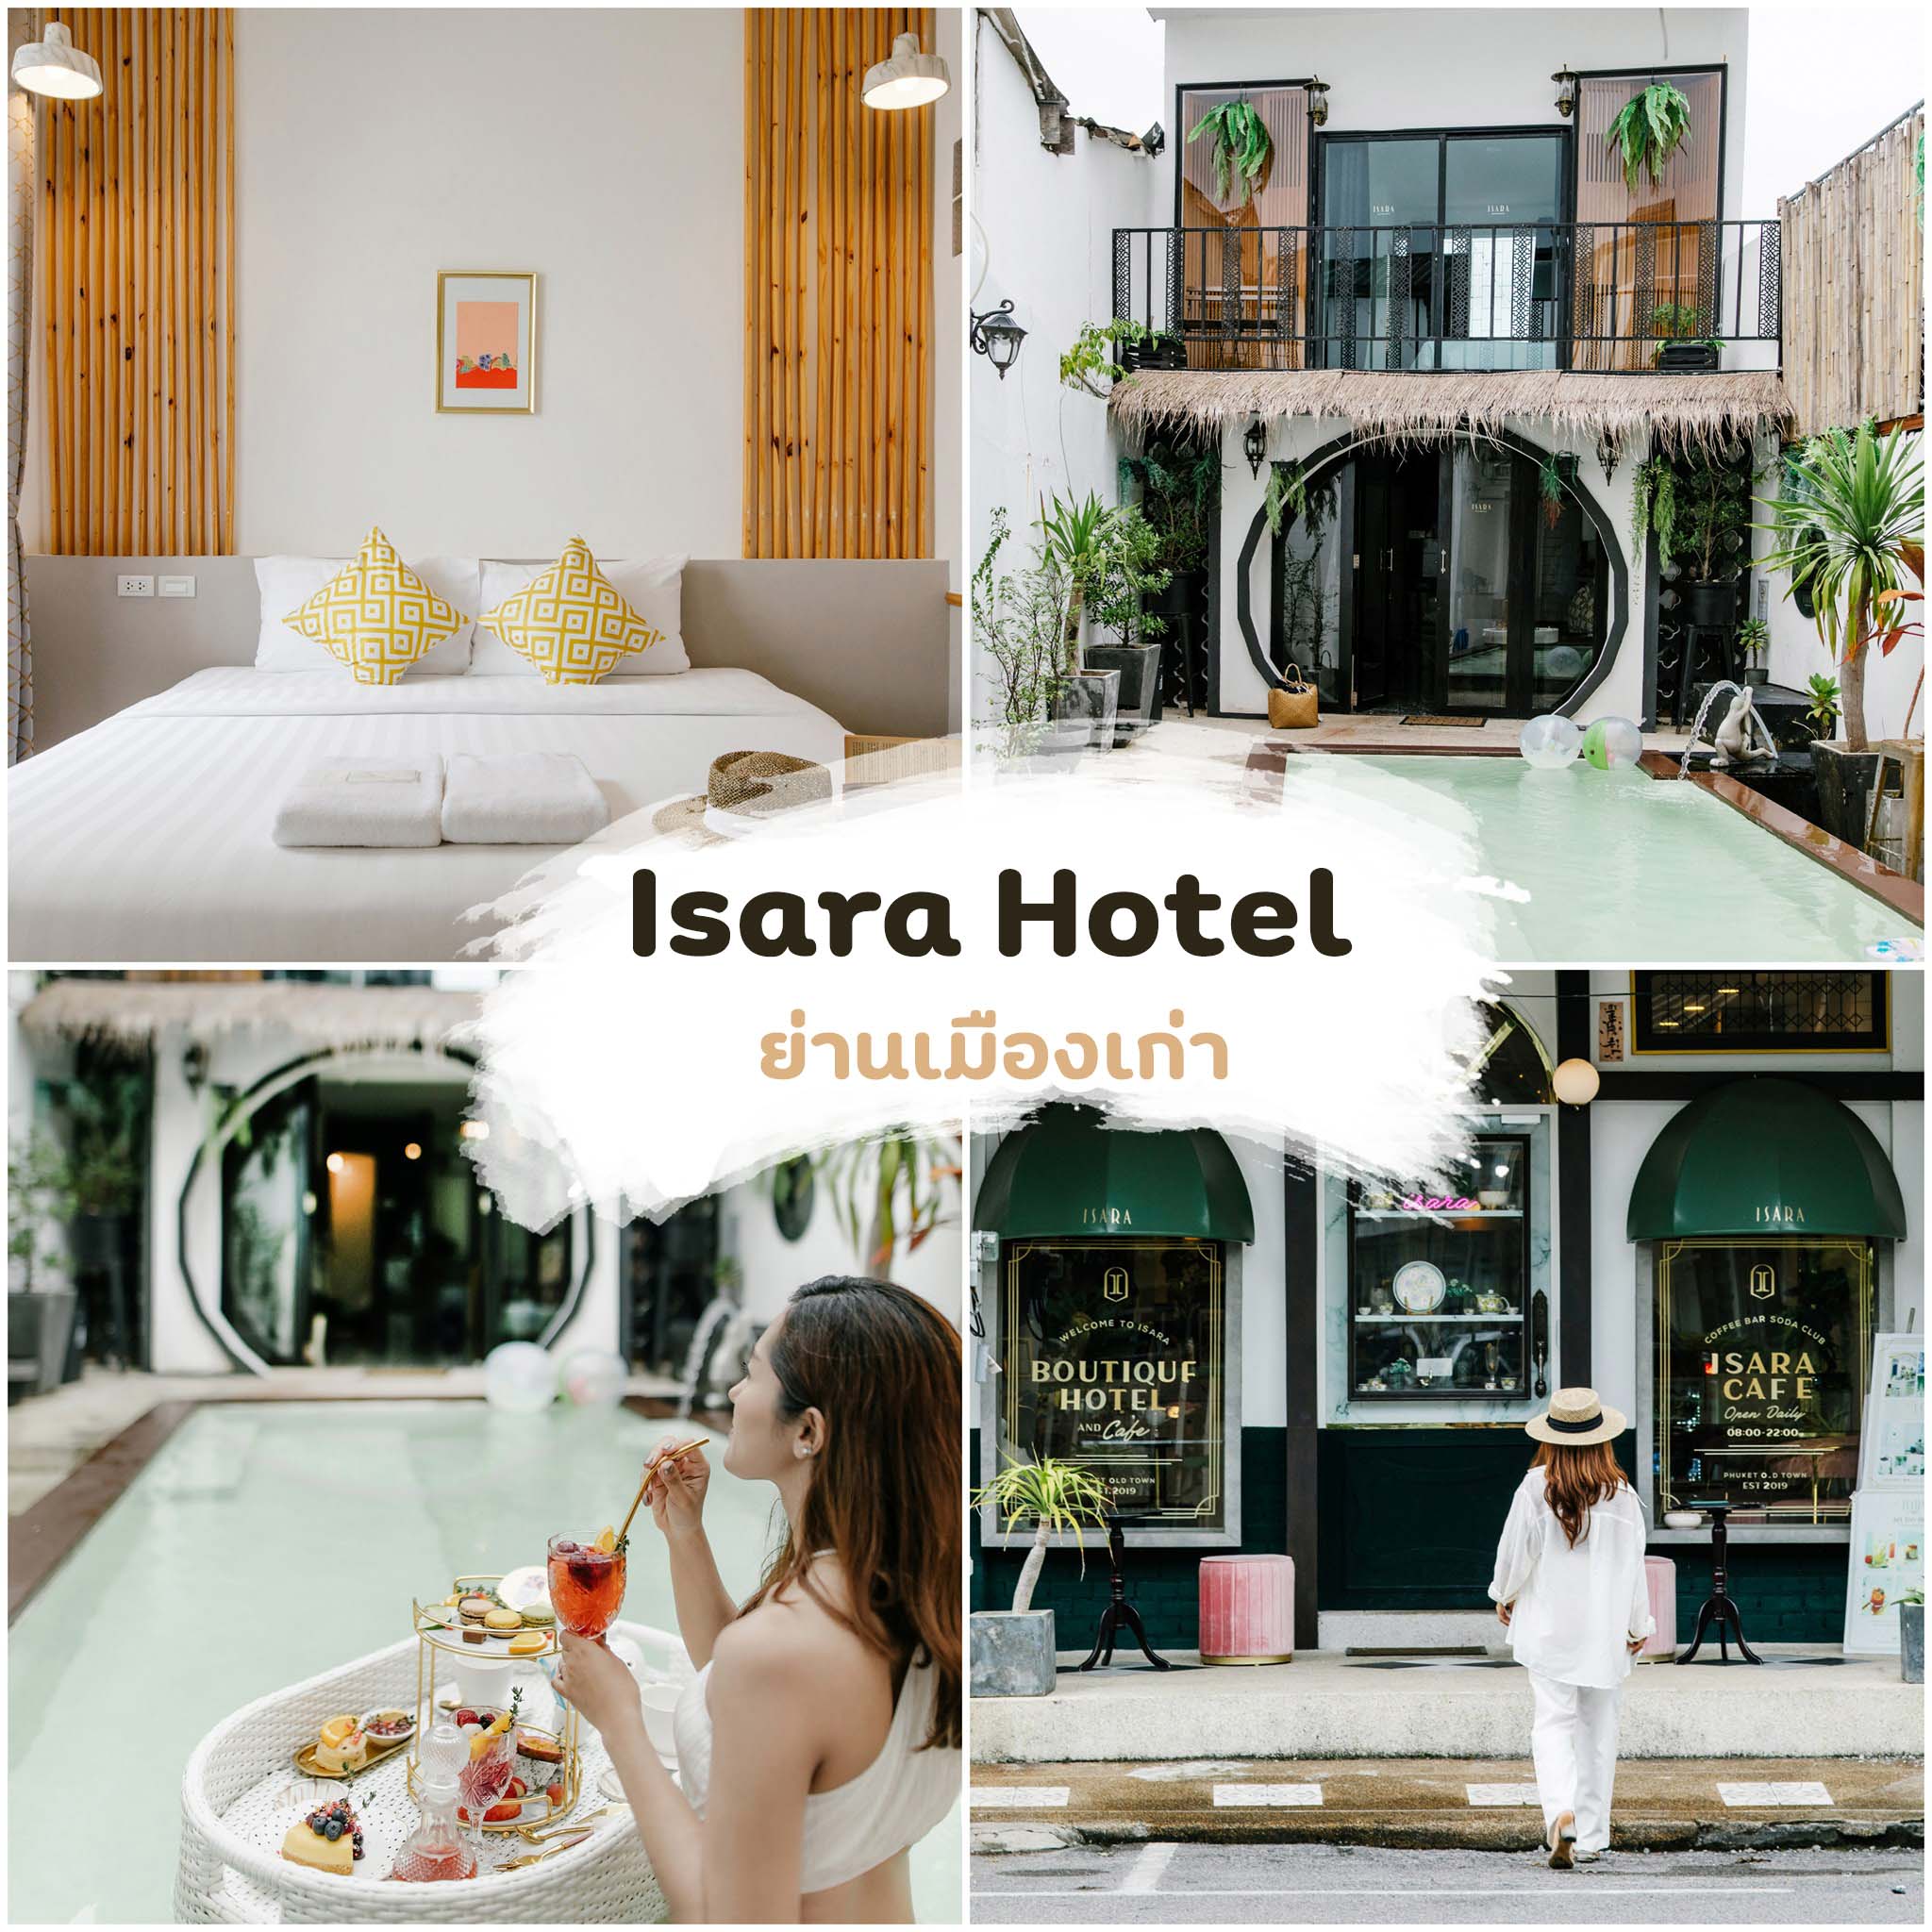 Isara-Hotel -ที่พักสุดสวยมีสระน้ำ-สไตล์ชิโน-โปรตุกีส-ใครอยากพักให้ได้บรรยากาศเมืองเก่าภูเก็ต-ที่นี่แนะนำเลย
 ที่เที่ยวภูเก็ต,ย่านเมืองเก่า